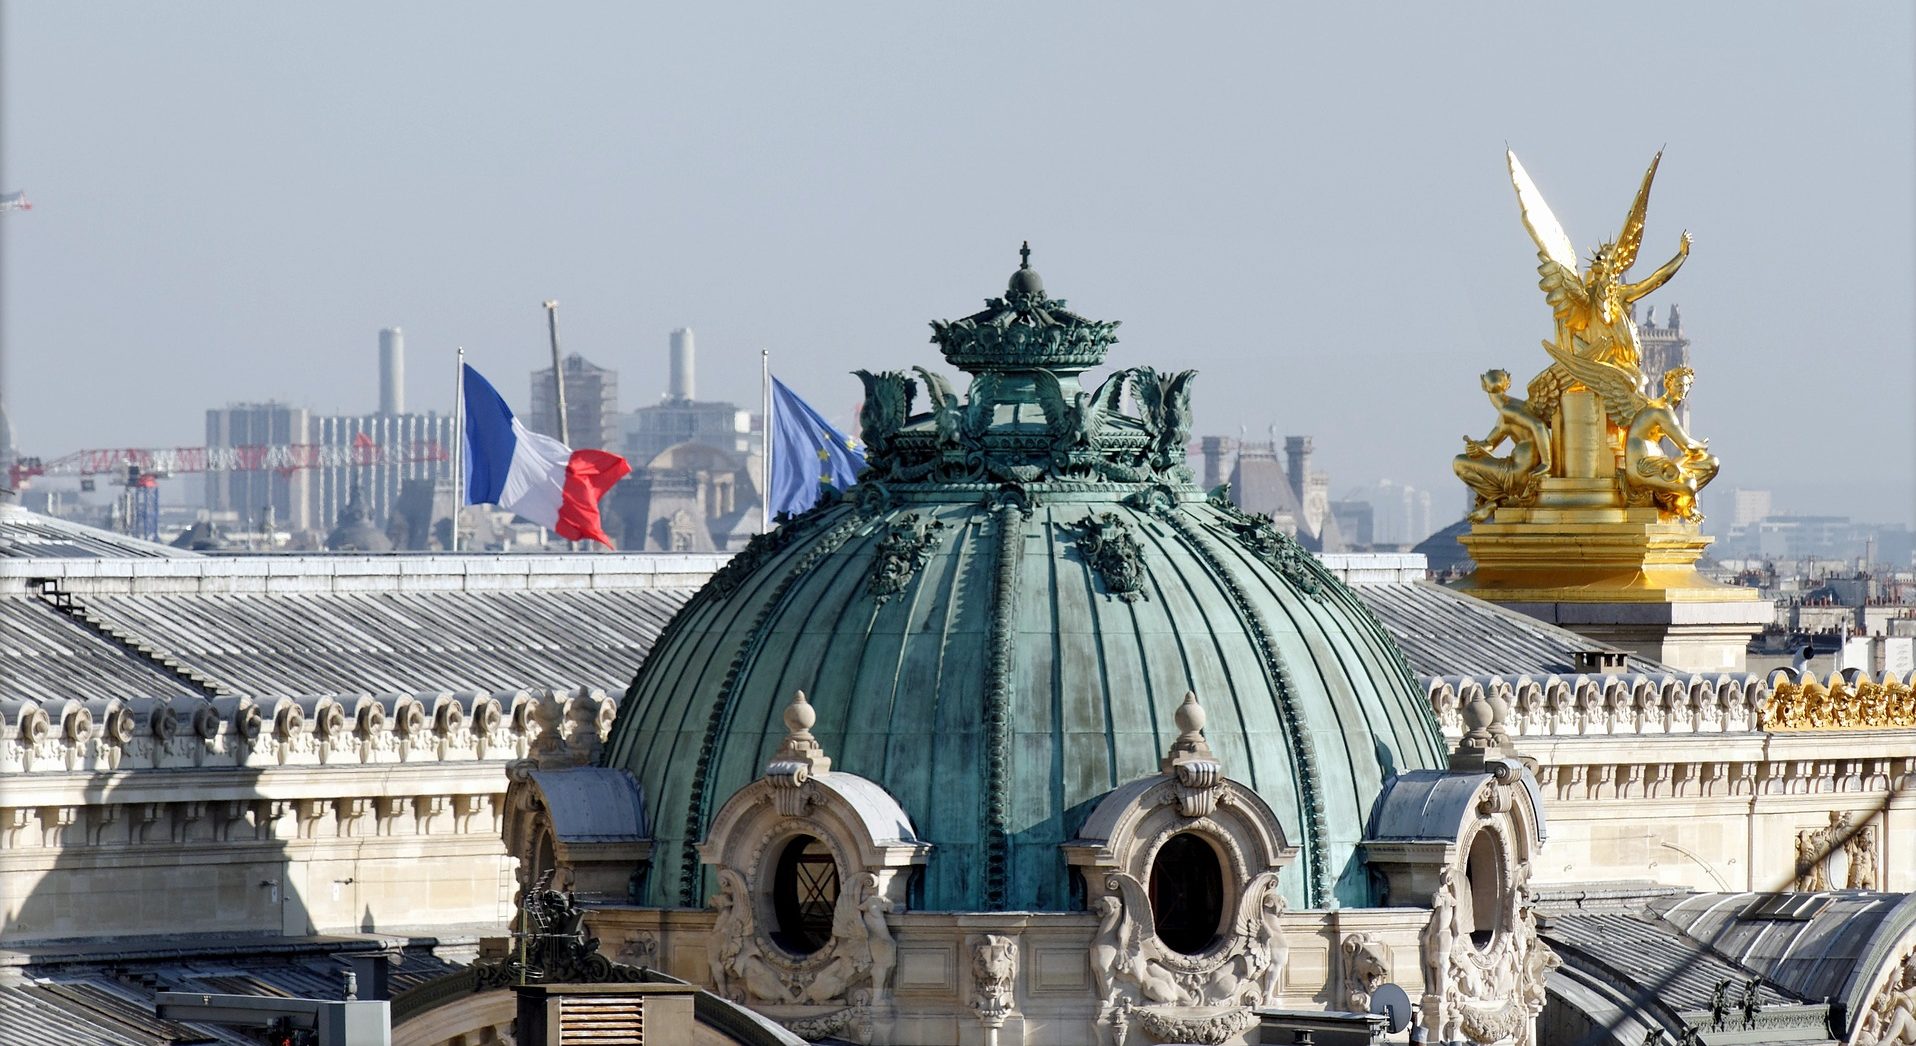 Roof of the Palais Garnier